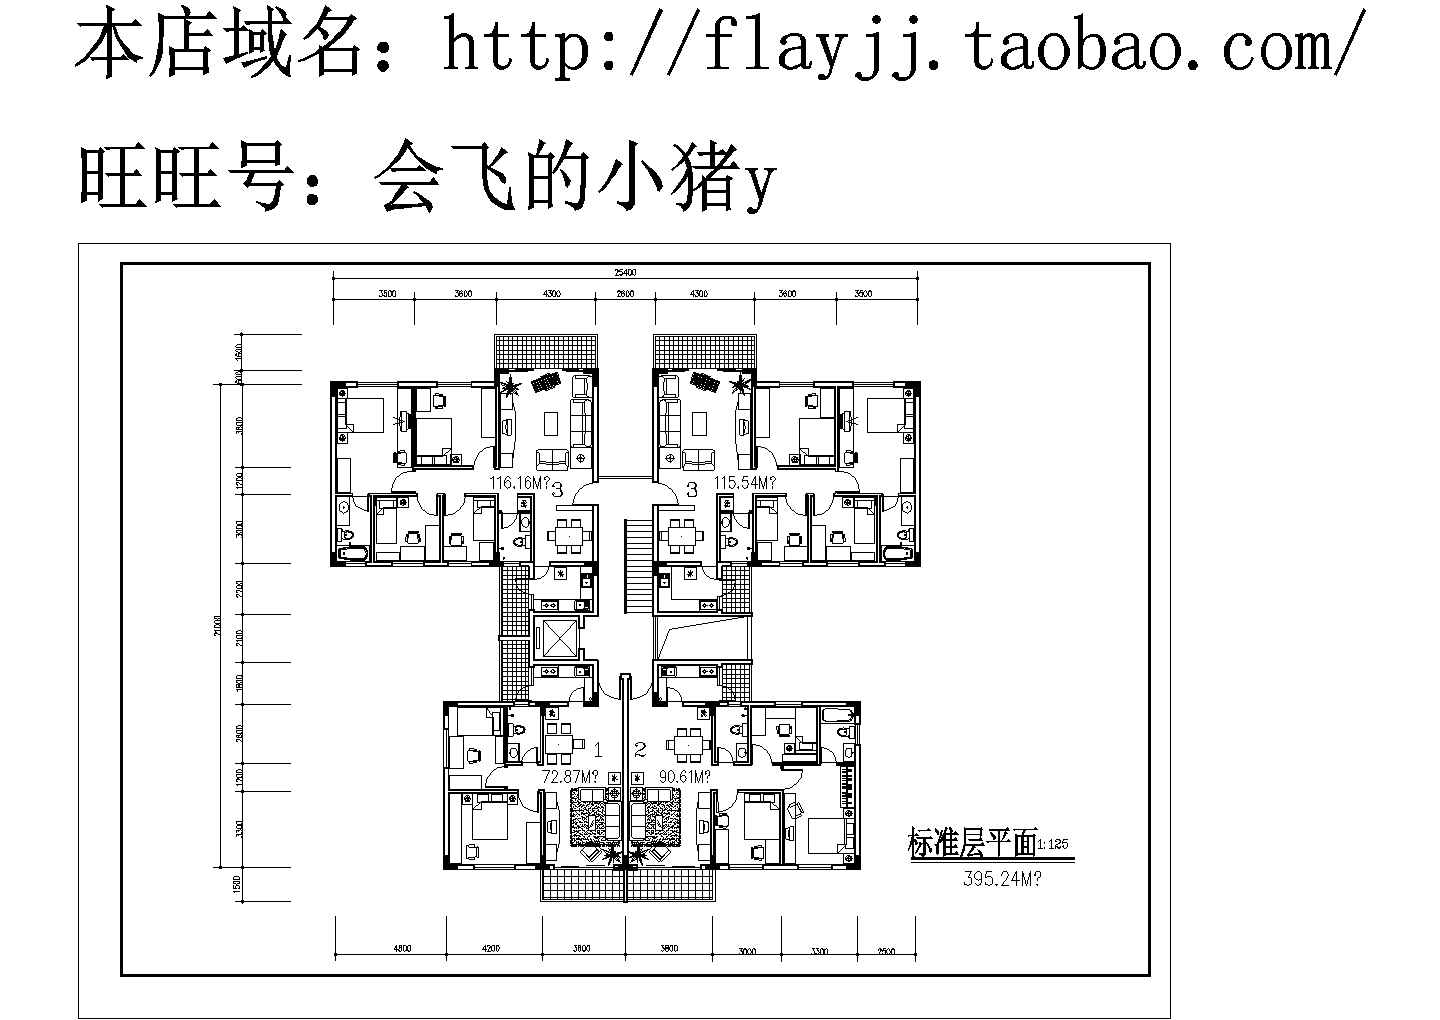 1楼梯1电梯4户cad设计图：2室2厅【72.87平】3室2厅【90.61平】4室2厅【115.54平 116.16平】